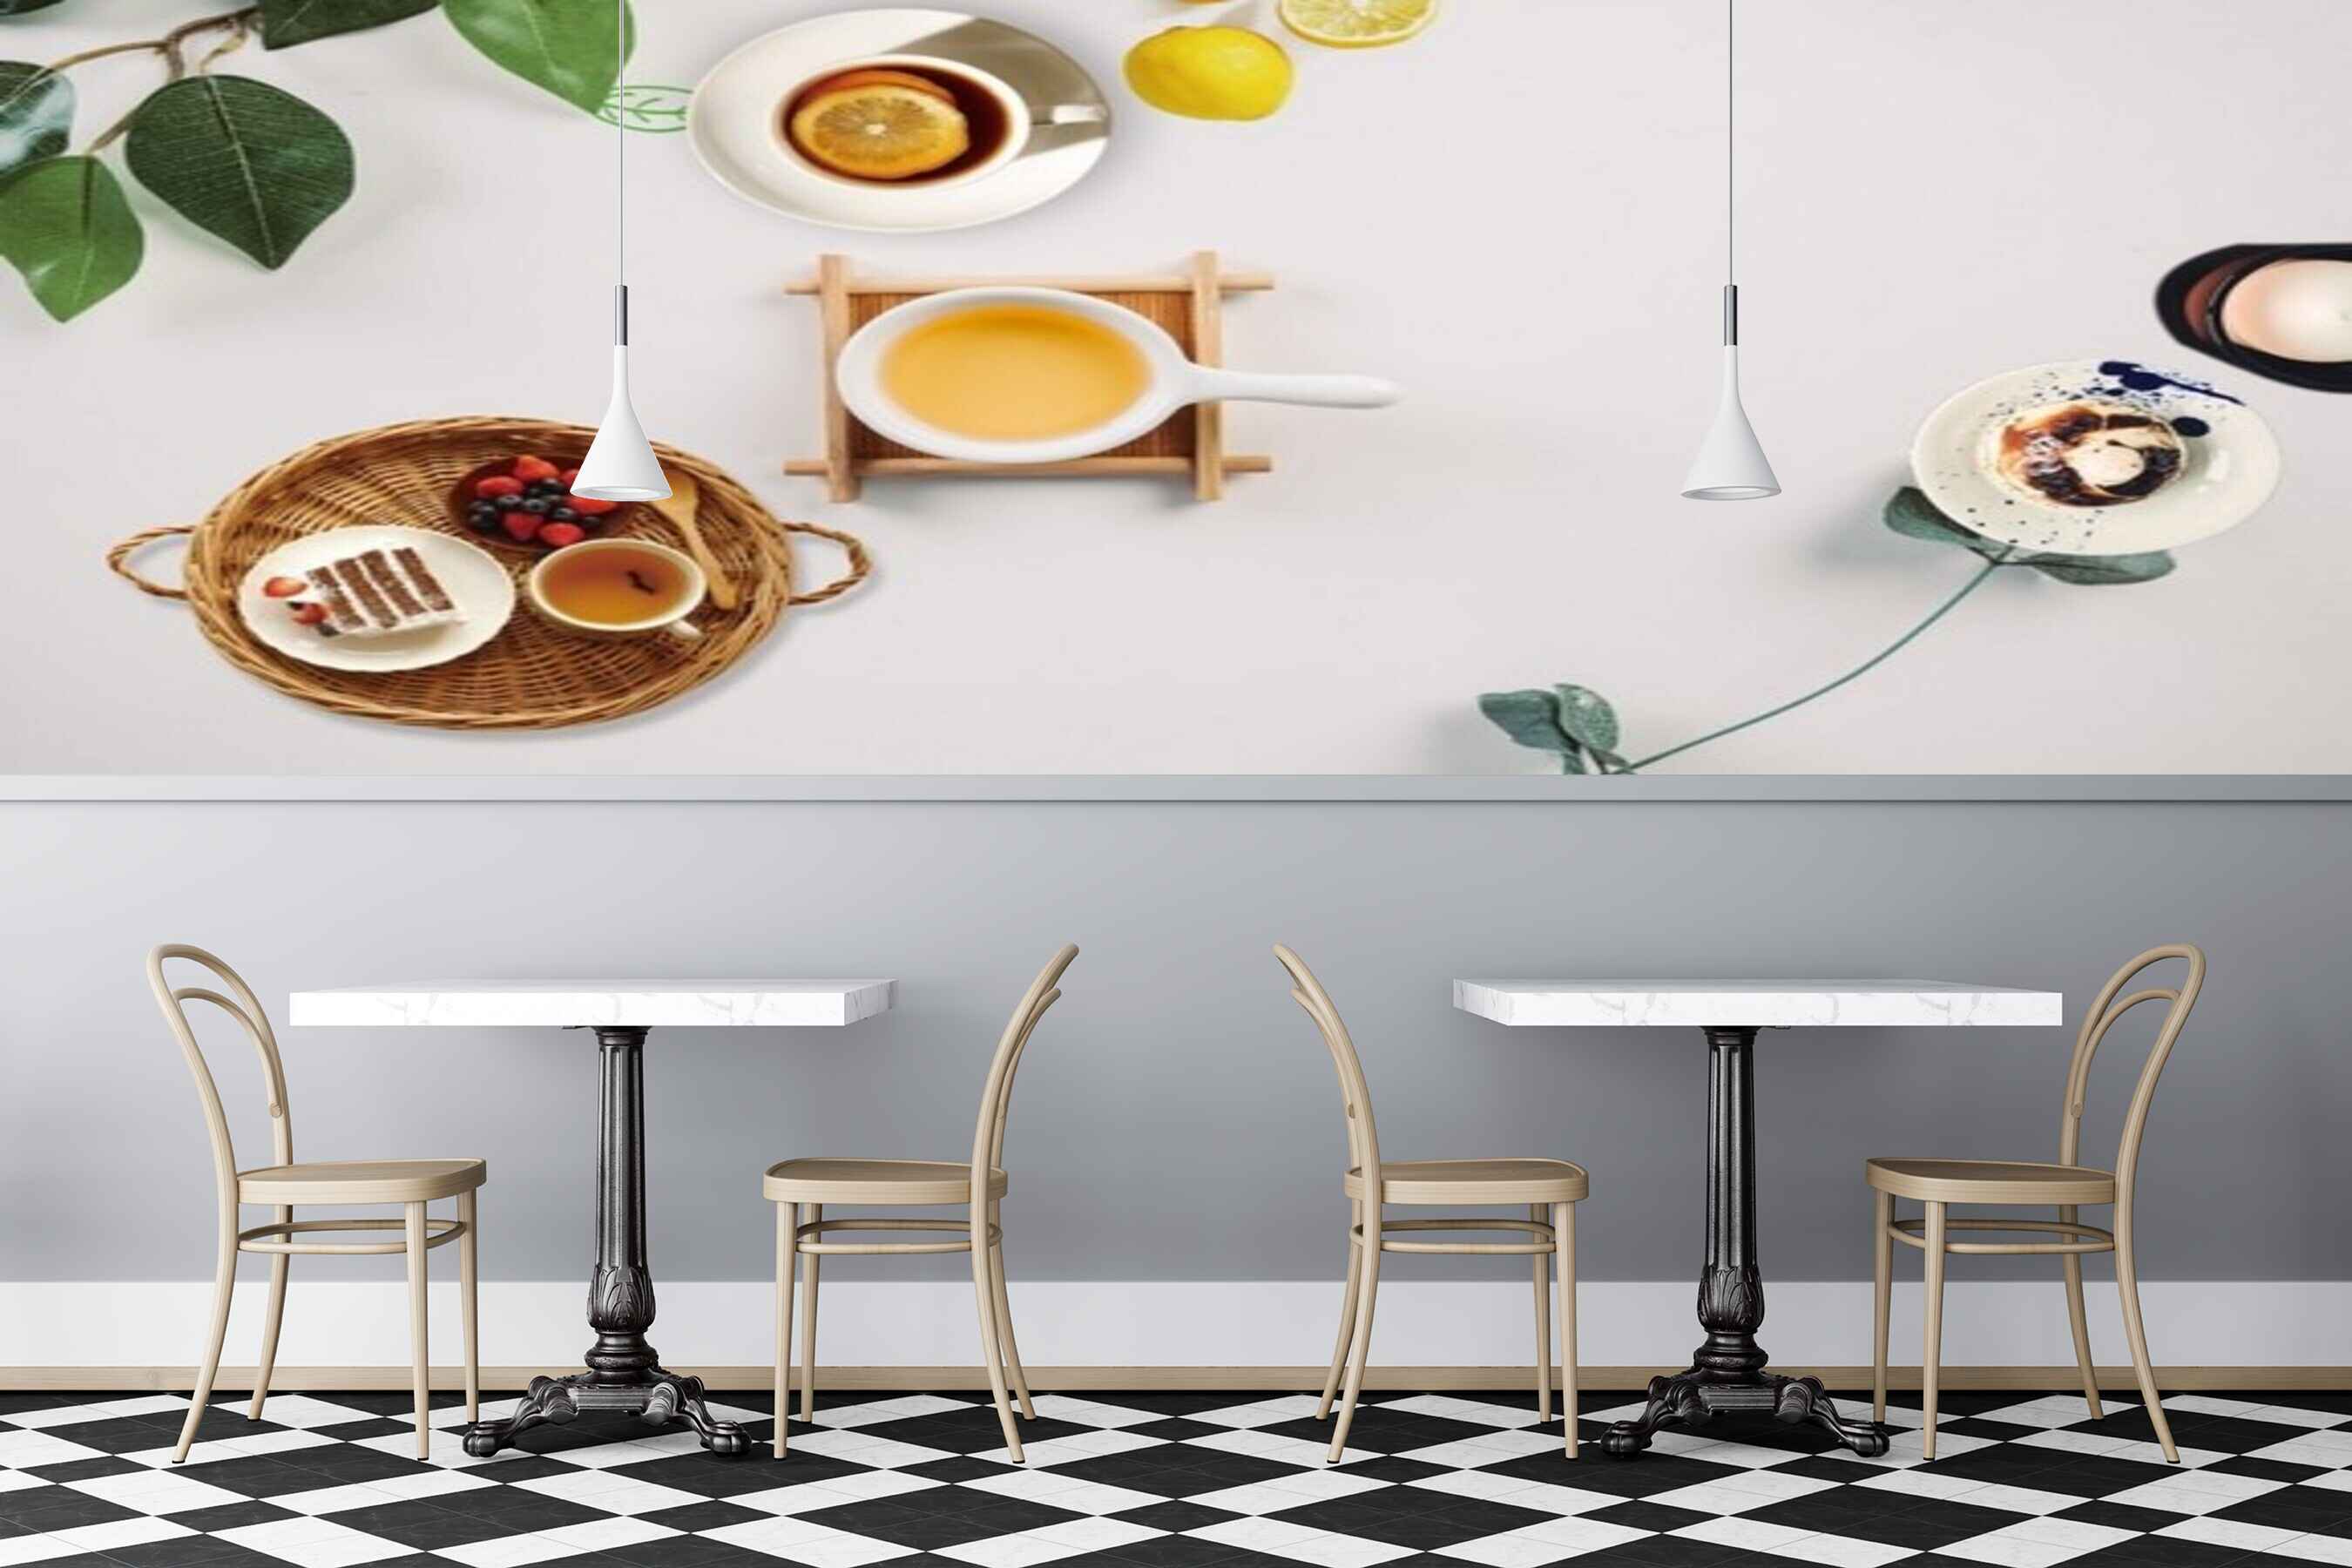 Avikalp MWZ3097 Lemon Juice Coffee Leaves HD Wallpaper for Cafe Restaurant